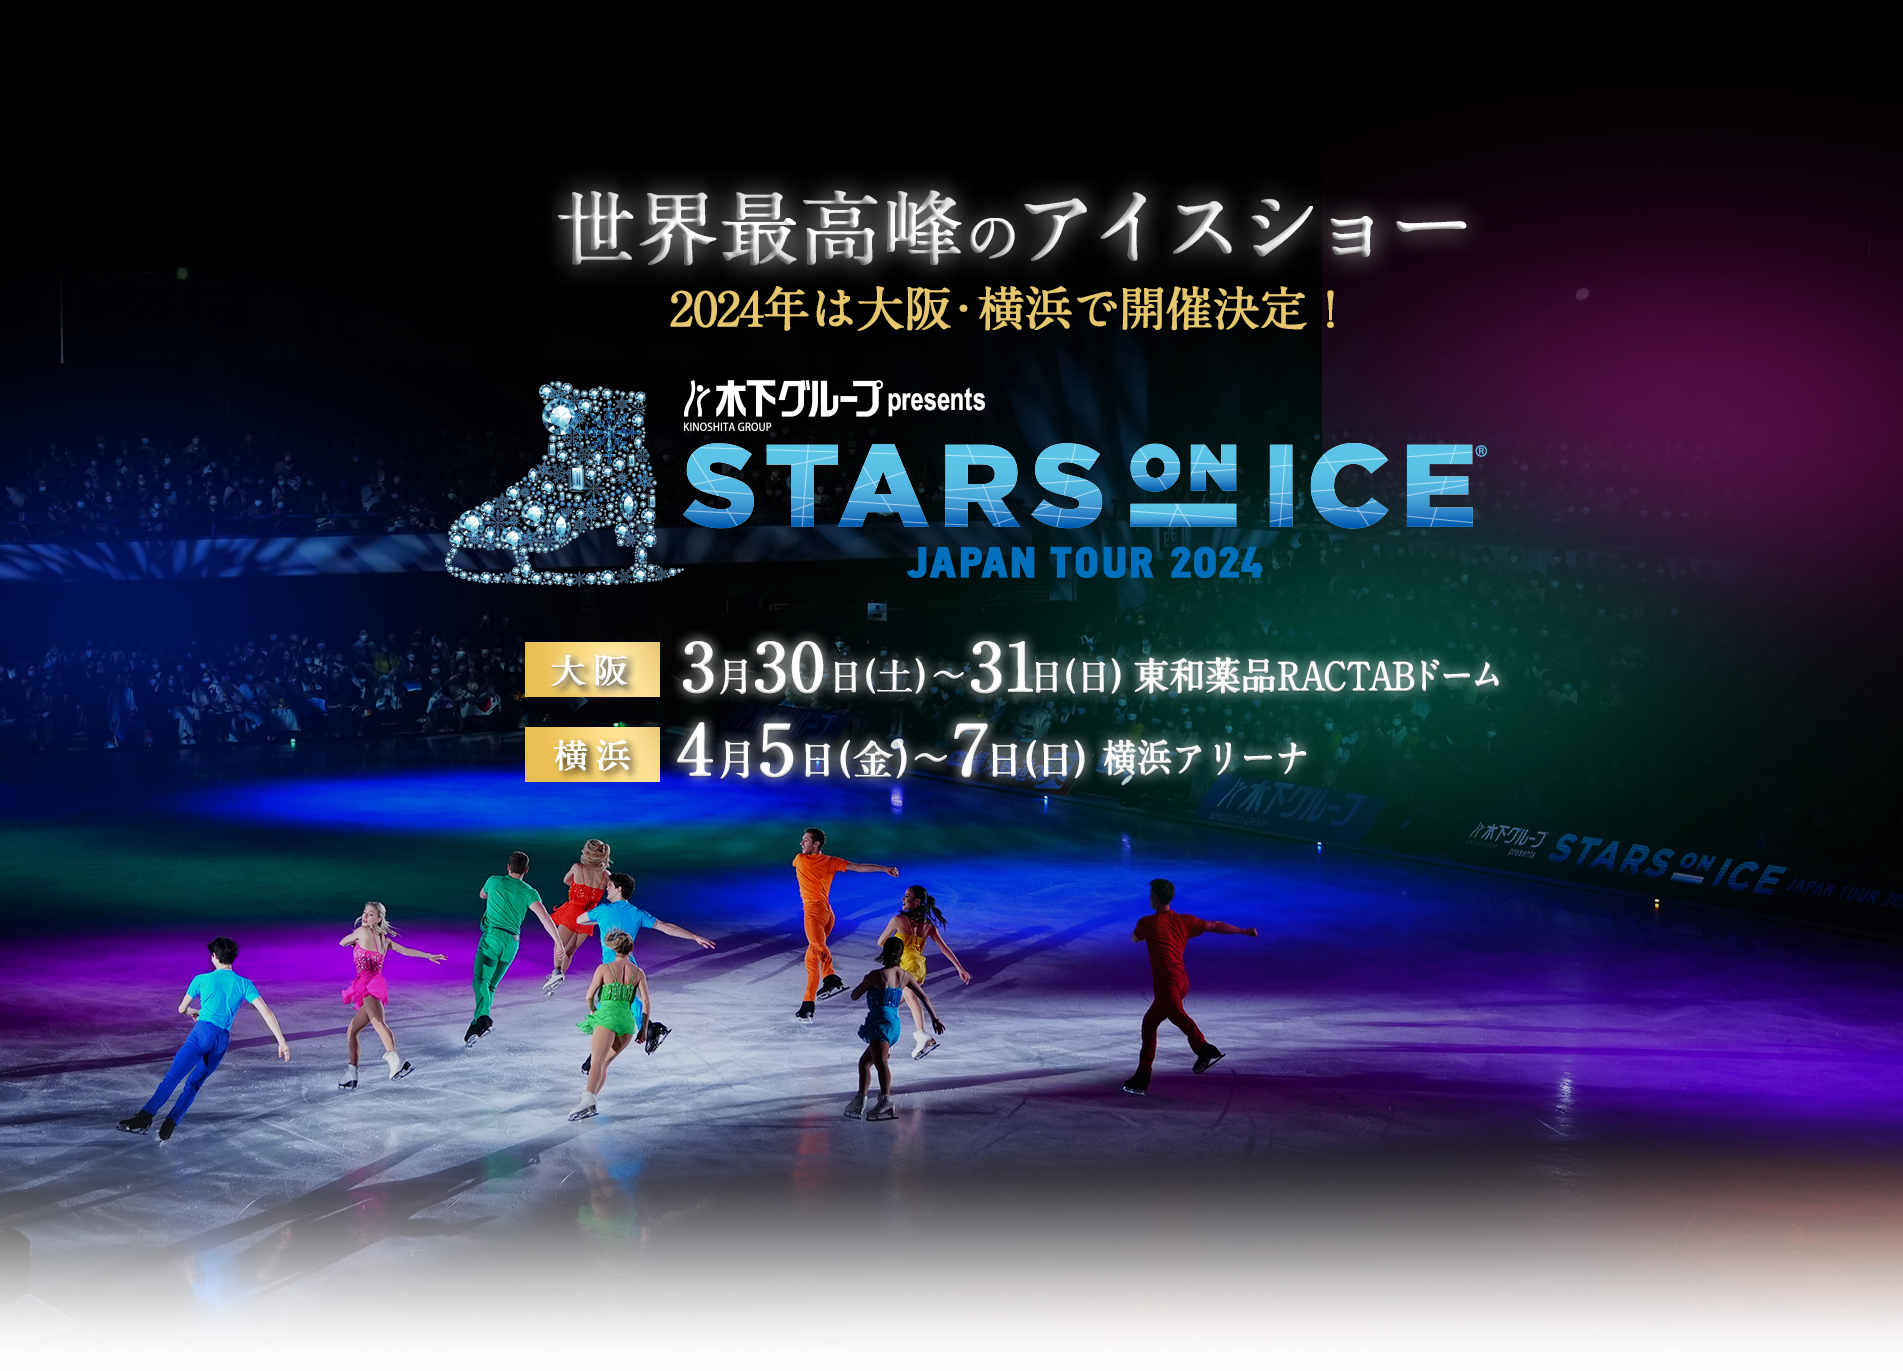 『木下グループ presents STARS ON ICE JAPAN TOUR 2024』が大阪と横浜で開催される